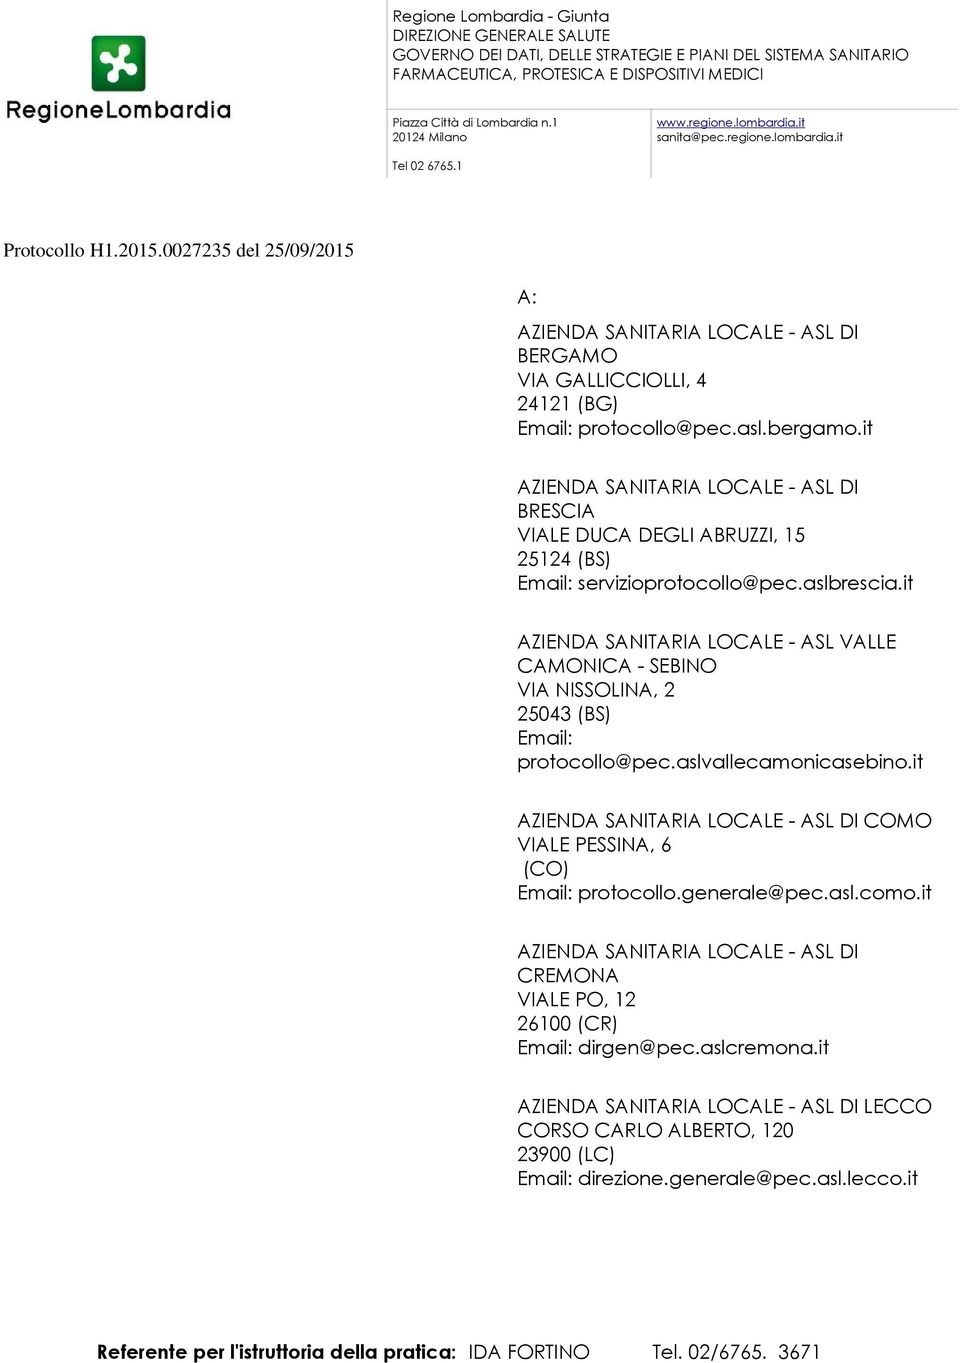 0027235 del 25/09/2015 A: AZIENDA SANITARIA LOCALE - ASL DI BERGAMO VIA GALLICCIOLLI, 4 24121 (BG) protocollo@pec.asl.bergamo.